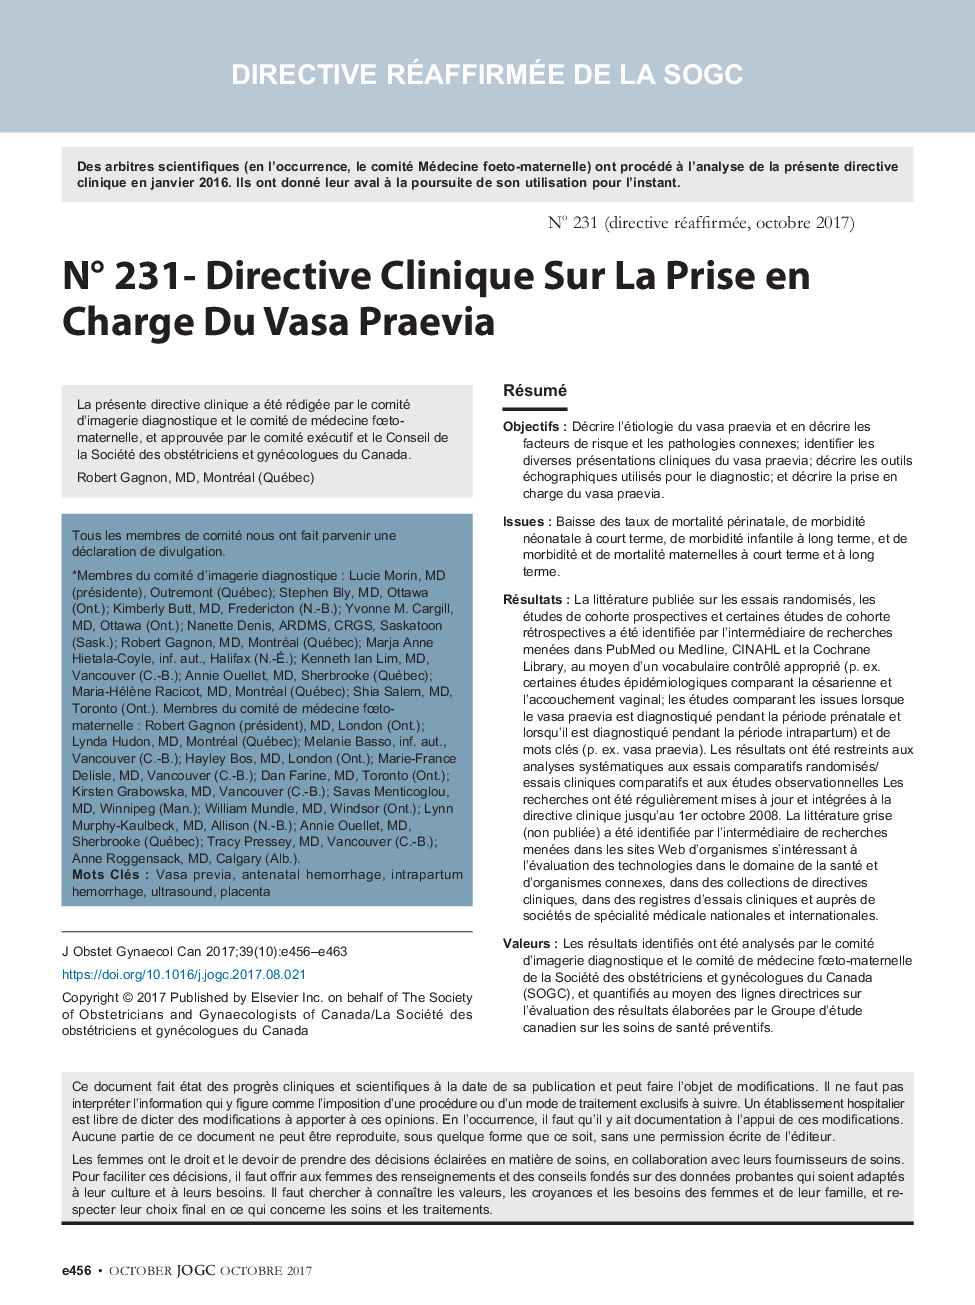 NÂ° 231- Directive Clinique Sur La Prise en Charge Du Vasa Praevia